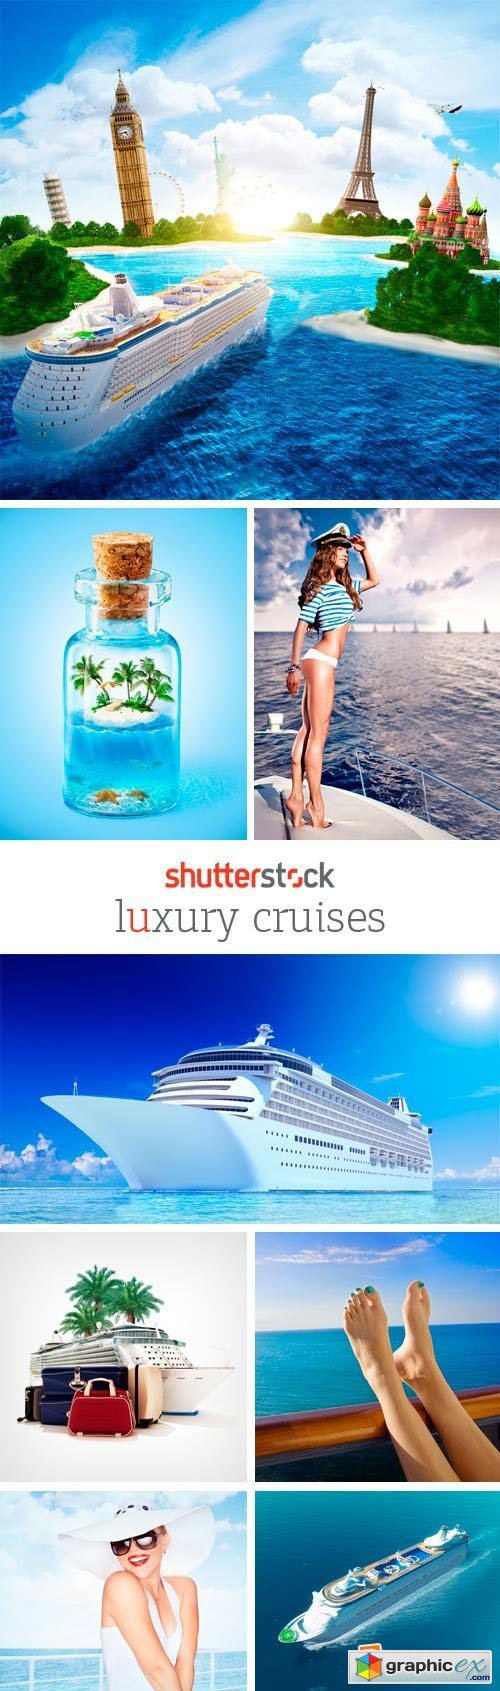 Amazing SS - Luxury Cruises 25xJPG